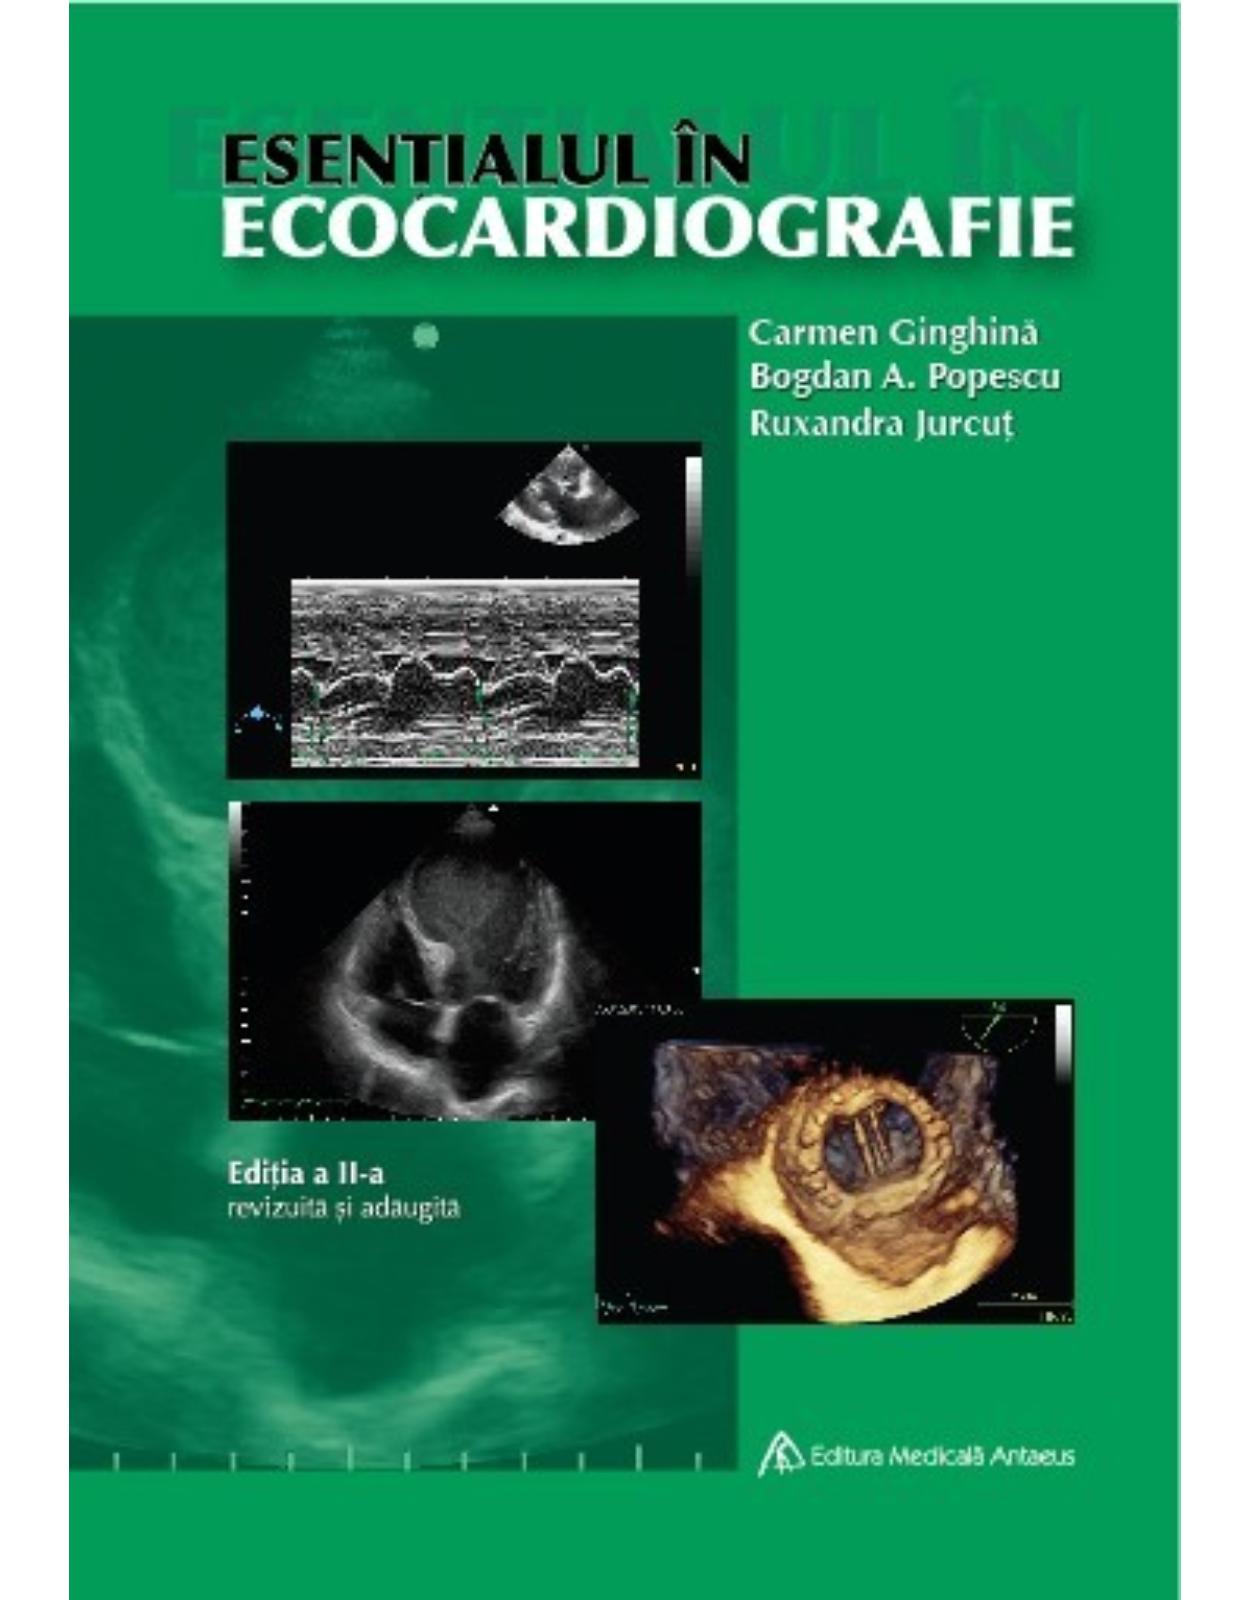 Esentialul in ecocardiografie, Editia a II-a revizuita si adaugita